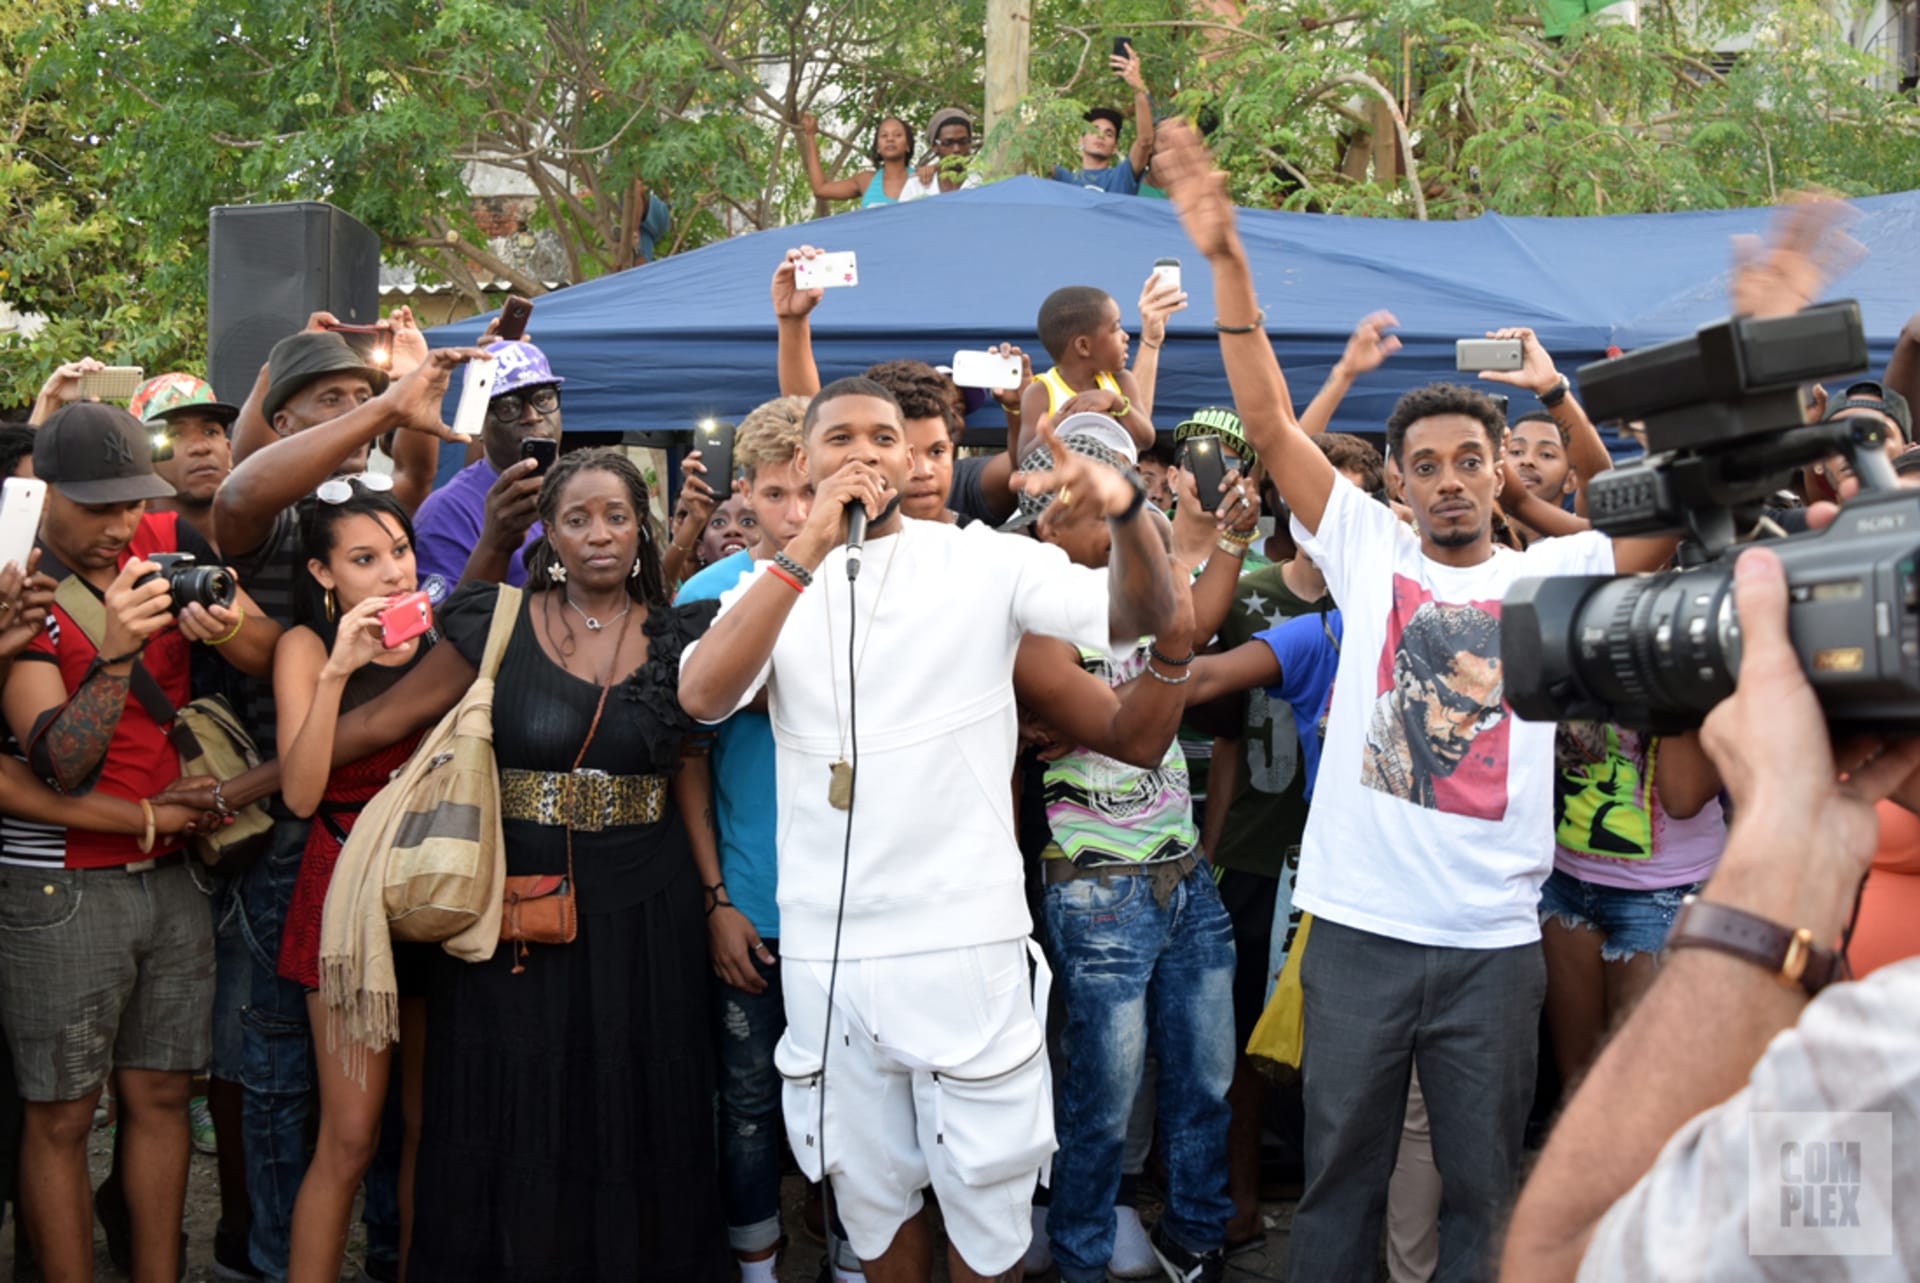 Usher Speaking in Cuba with fans